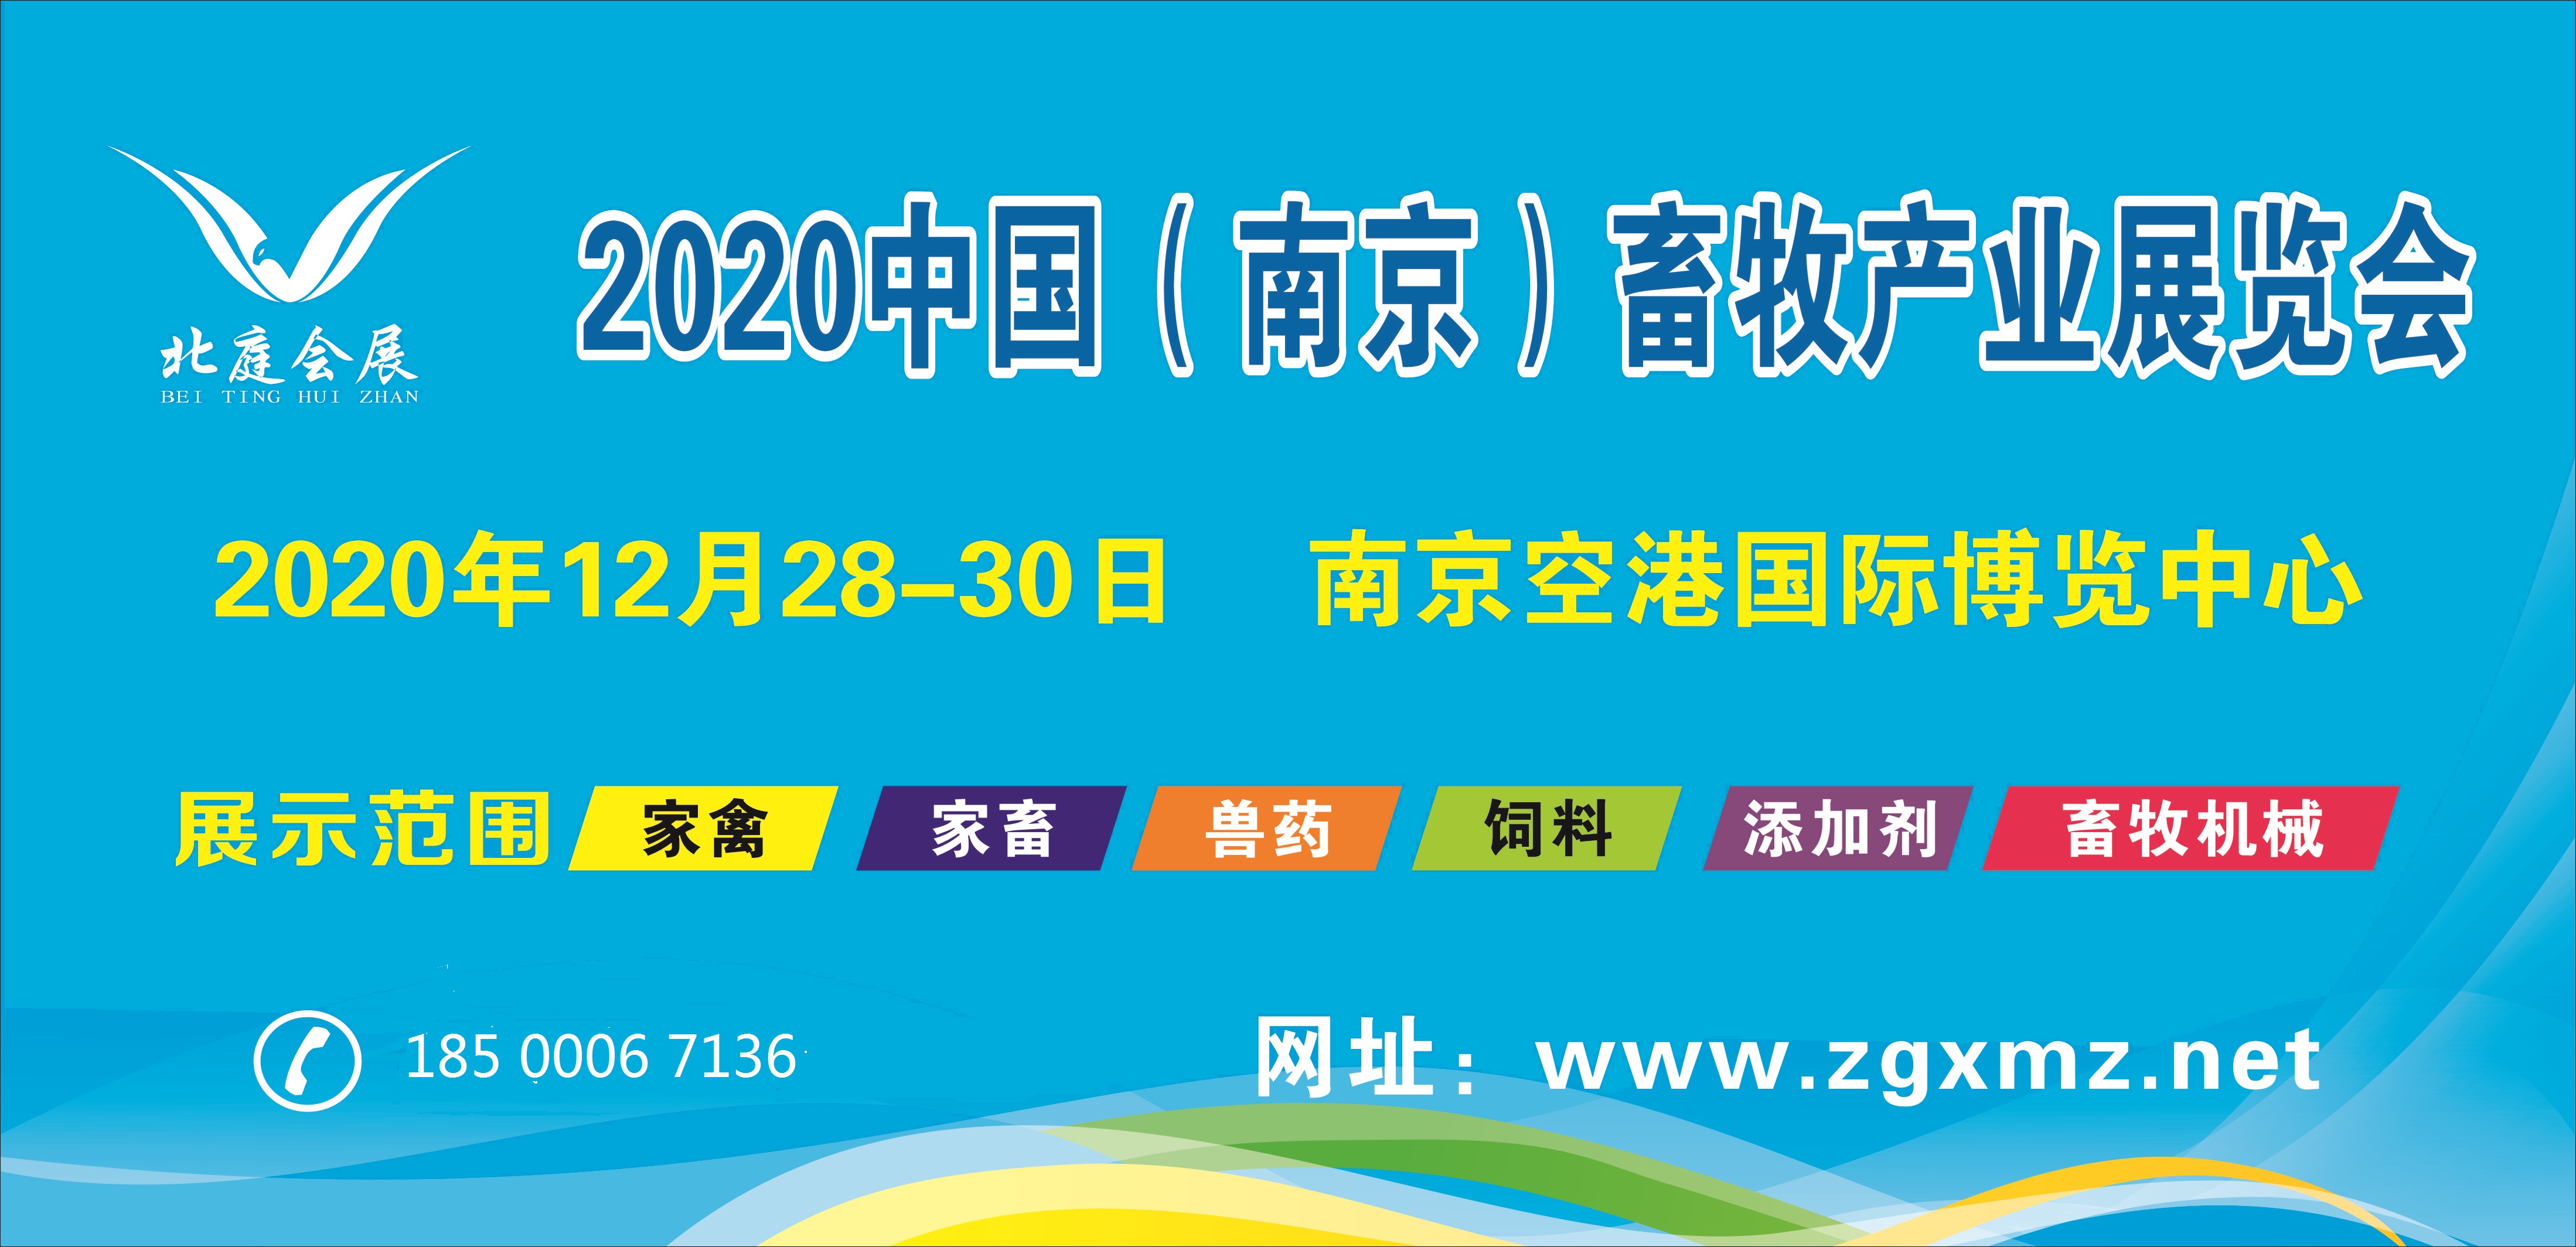 2020.12.28-30江苏南京畜牧产业展览会